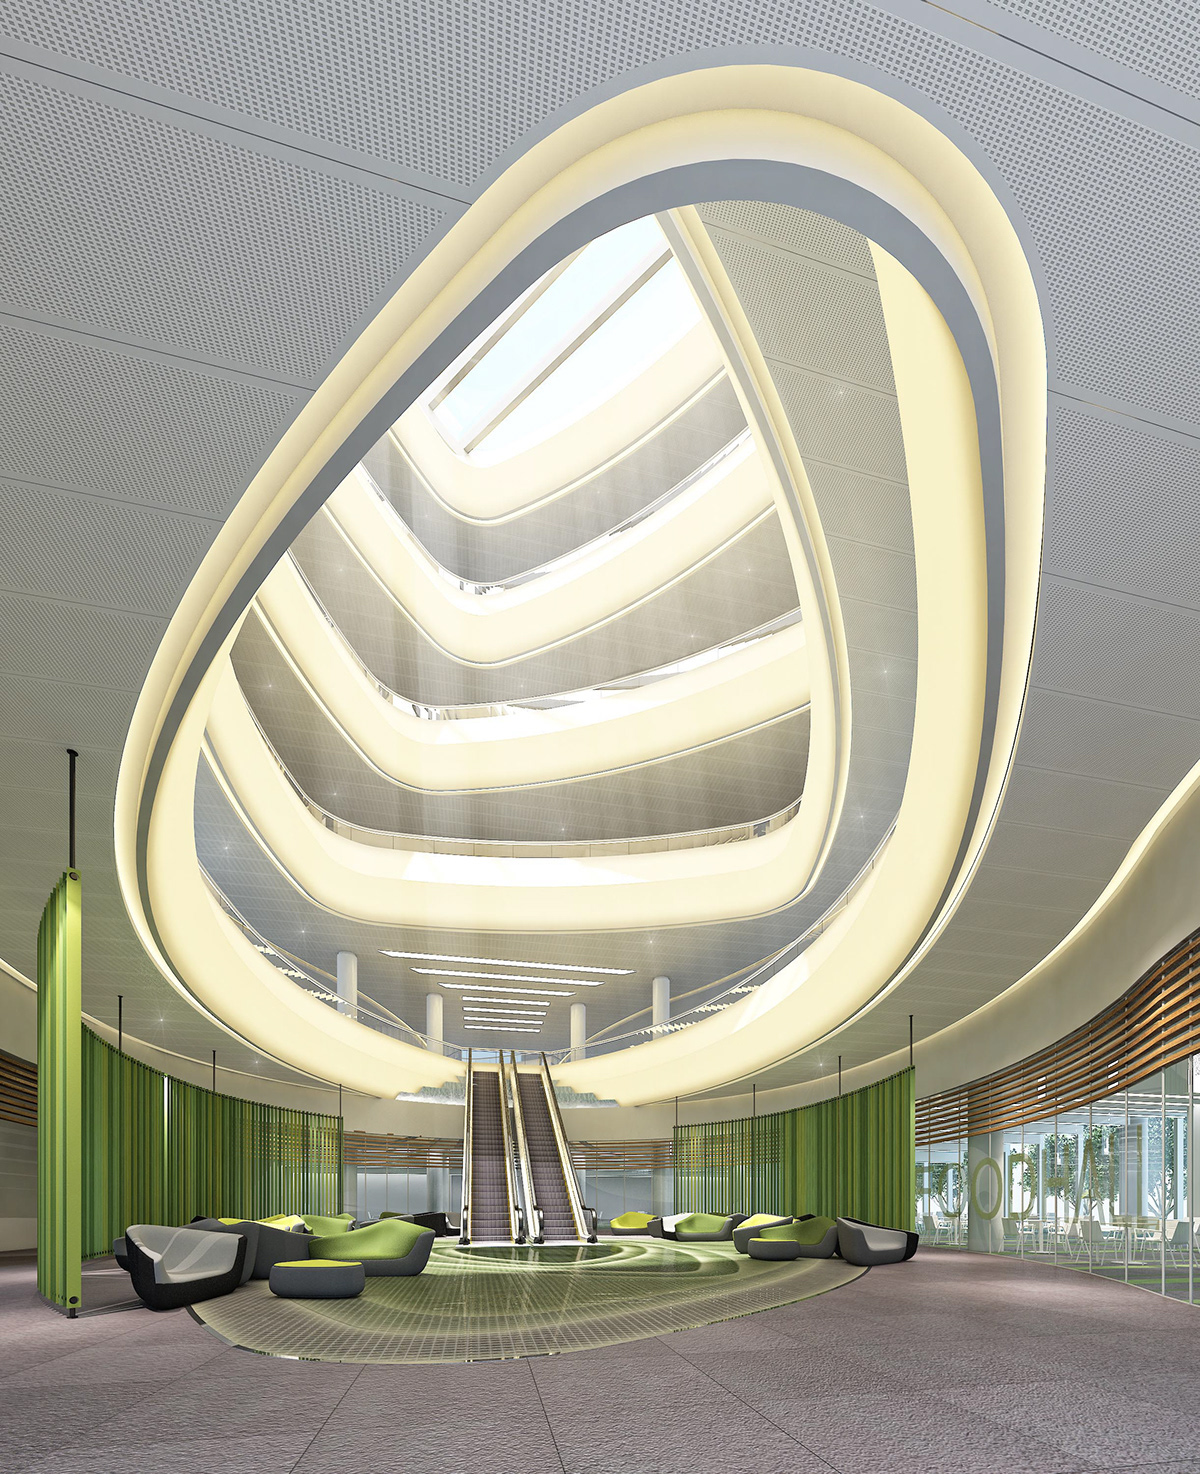 Atruim University modern sleek organic Form Abu Dhabi khalifa